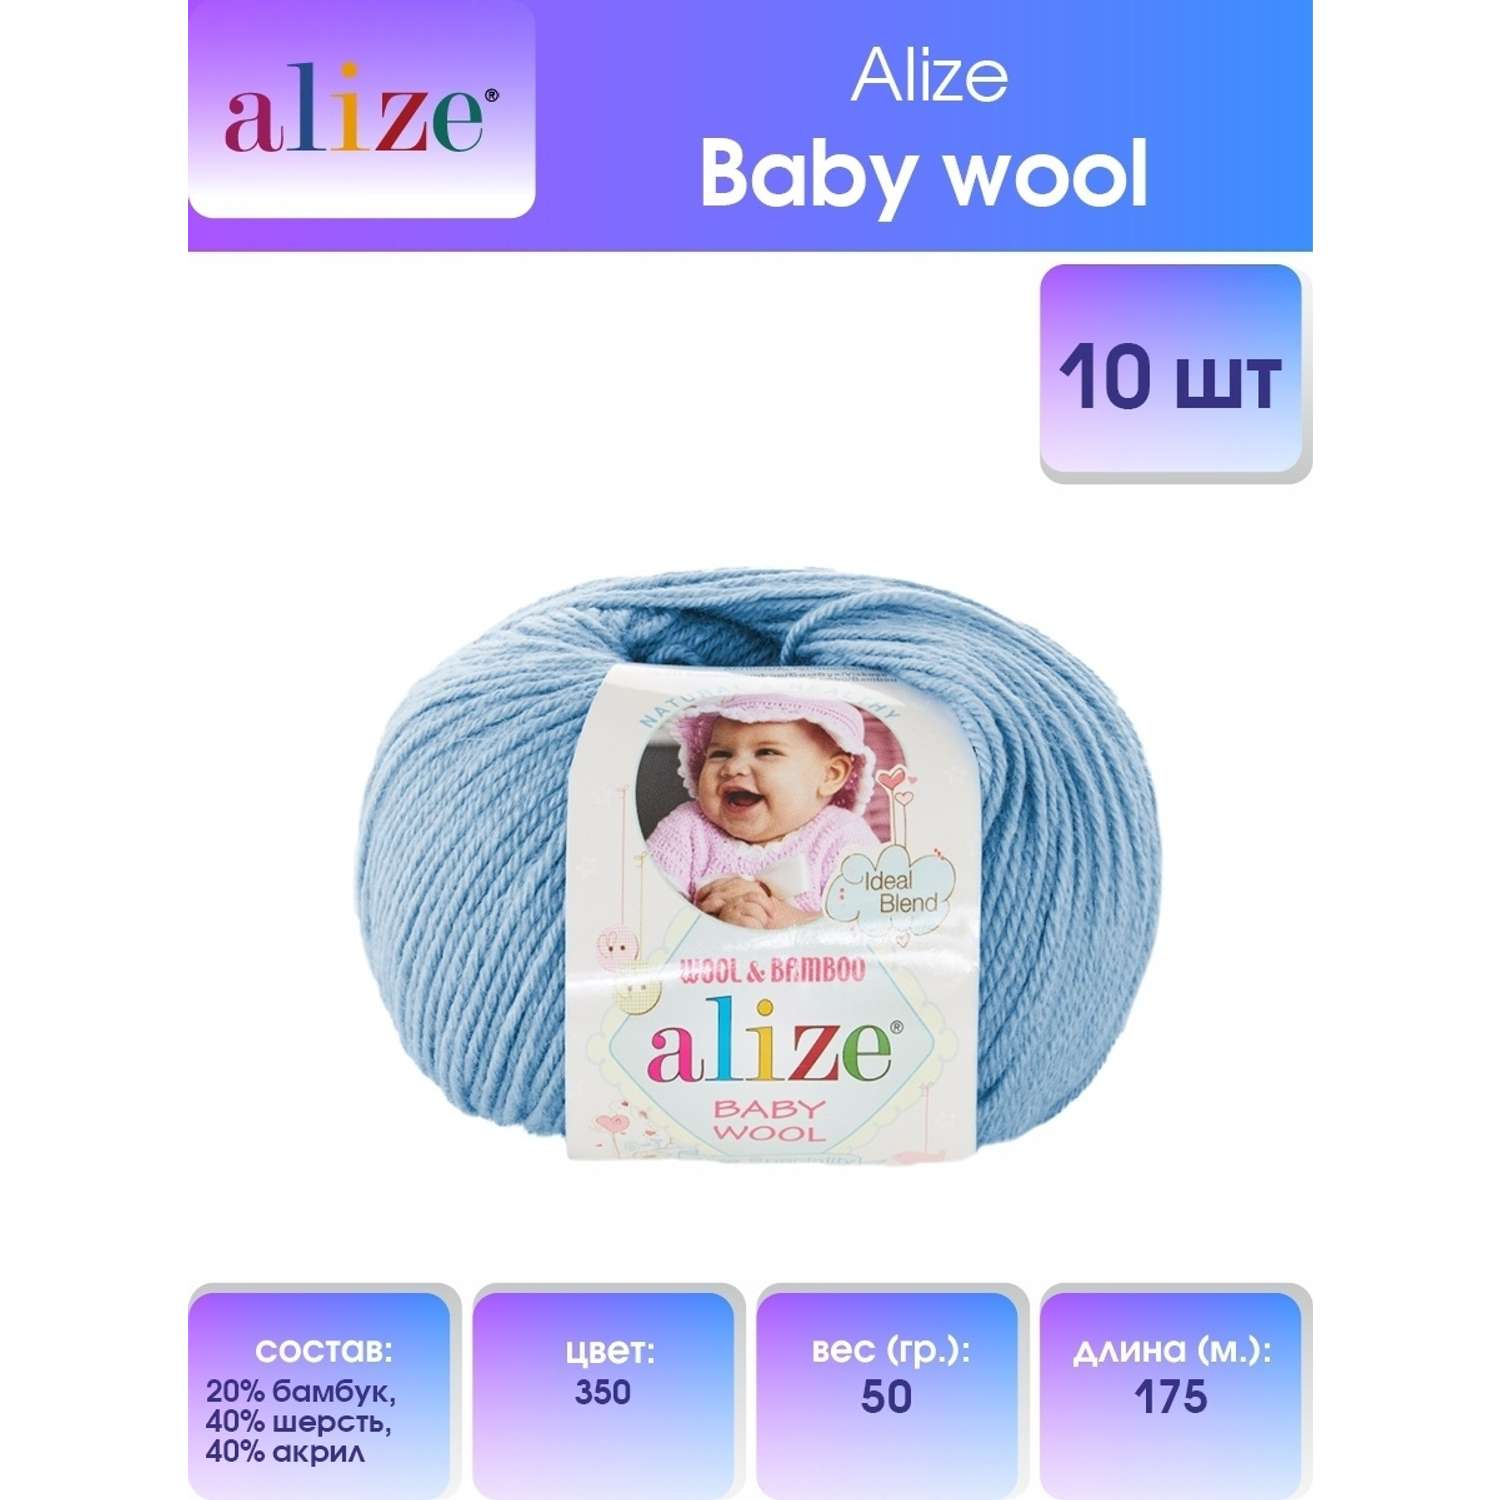 Пряжа для вязания Alize baby wool бамбук шерсть акрил мягкая 50 гр 175 м 350 светло-голубой 10 мотков - фото 1